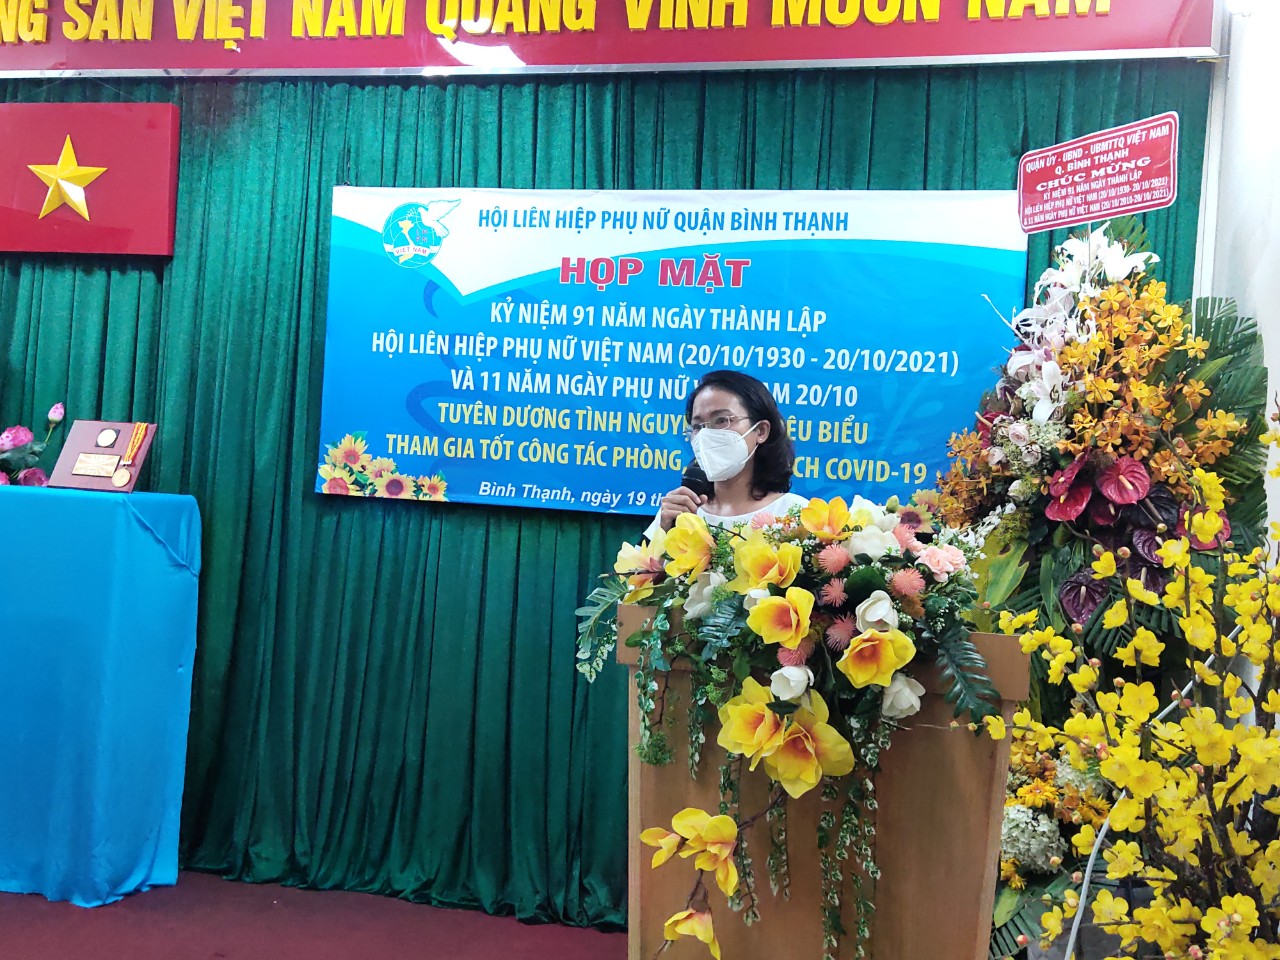 Bà Bùi Thị Thu Hà – Phó Chủ tịch Hội LHPN Q. Bình Thạnh đã cảm ơn sự hỗ trợ về mọi mặt, cả công tác tuyên truyền lẫn chương trình an sinh mà Báo Phụ nữ TP đã dành cho địa phương trong thời gian qua cũng như cảm ơn tấm lòng sẻ chia của Tổng công ty Cảng hàng không Việt Nam